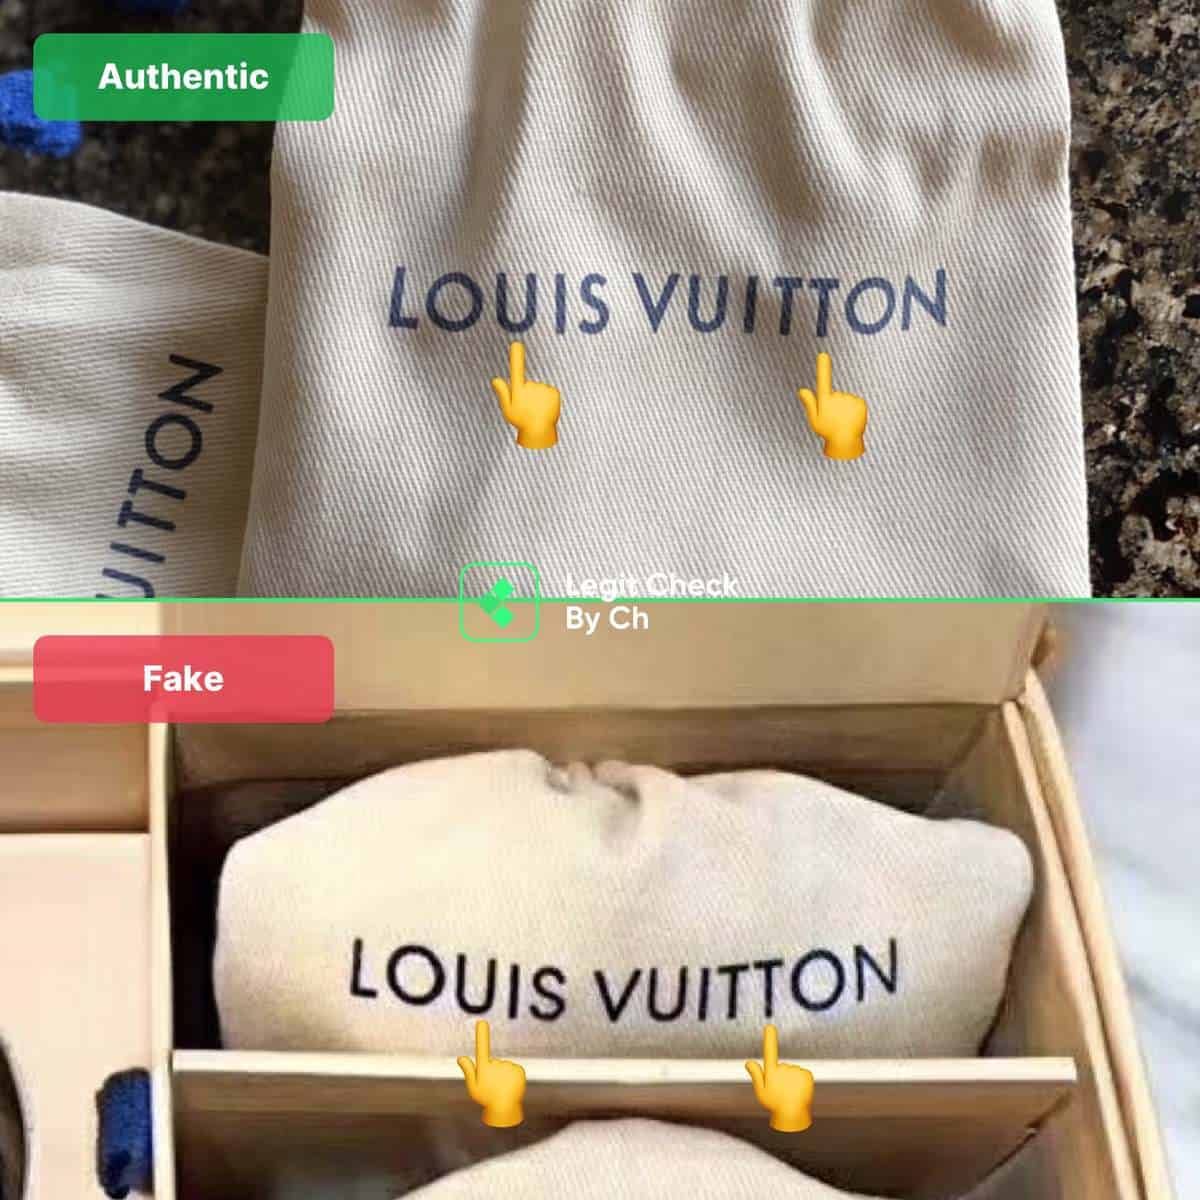 Louis Vuitton, Bags, Authentic Louis Vuitton Dust Bag